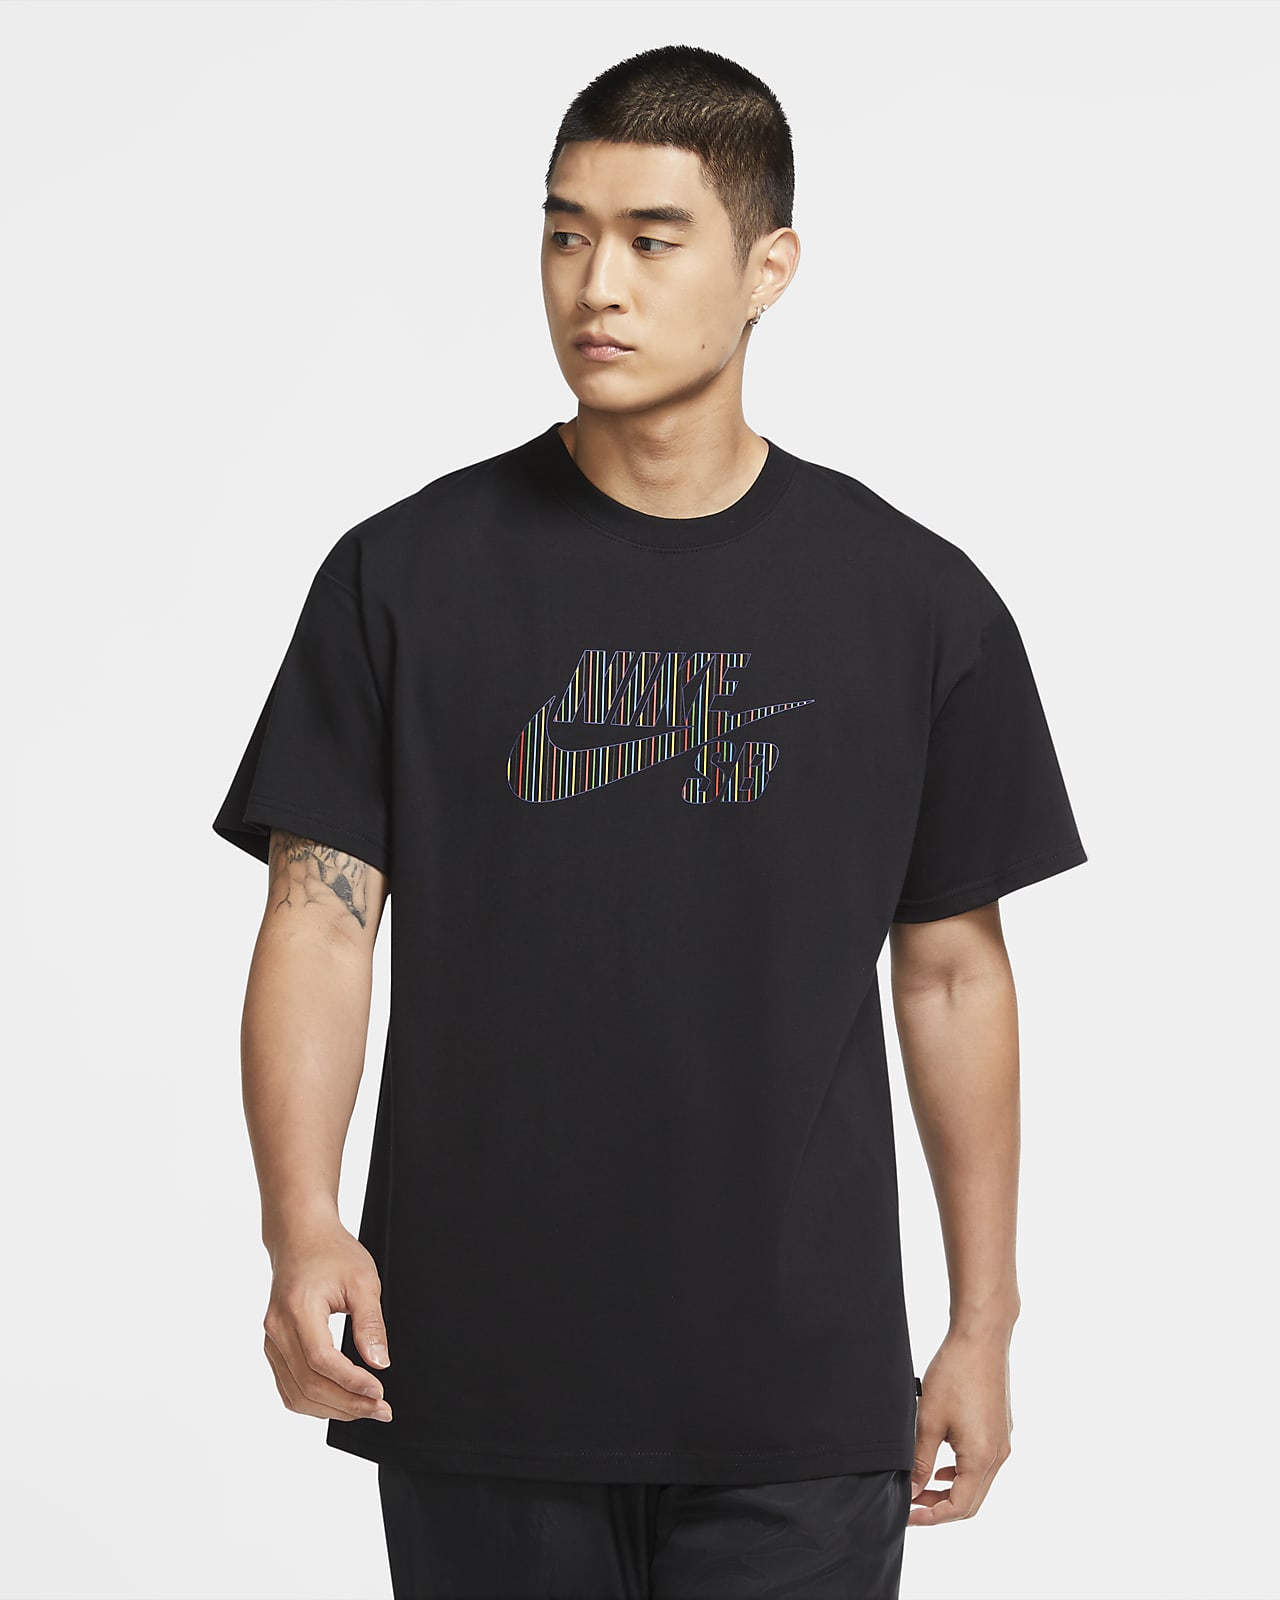 Nike SB Men's Logo Skate T-Shirt. Nike HR